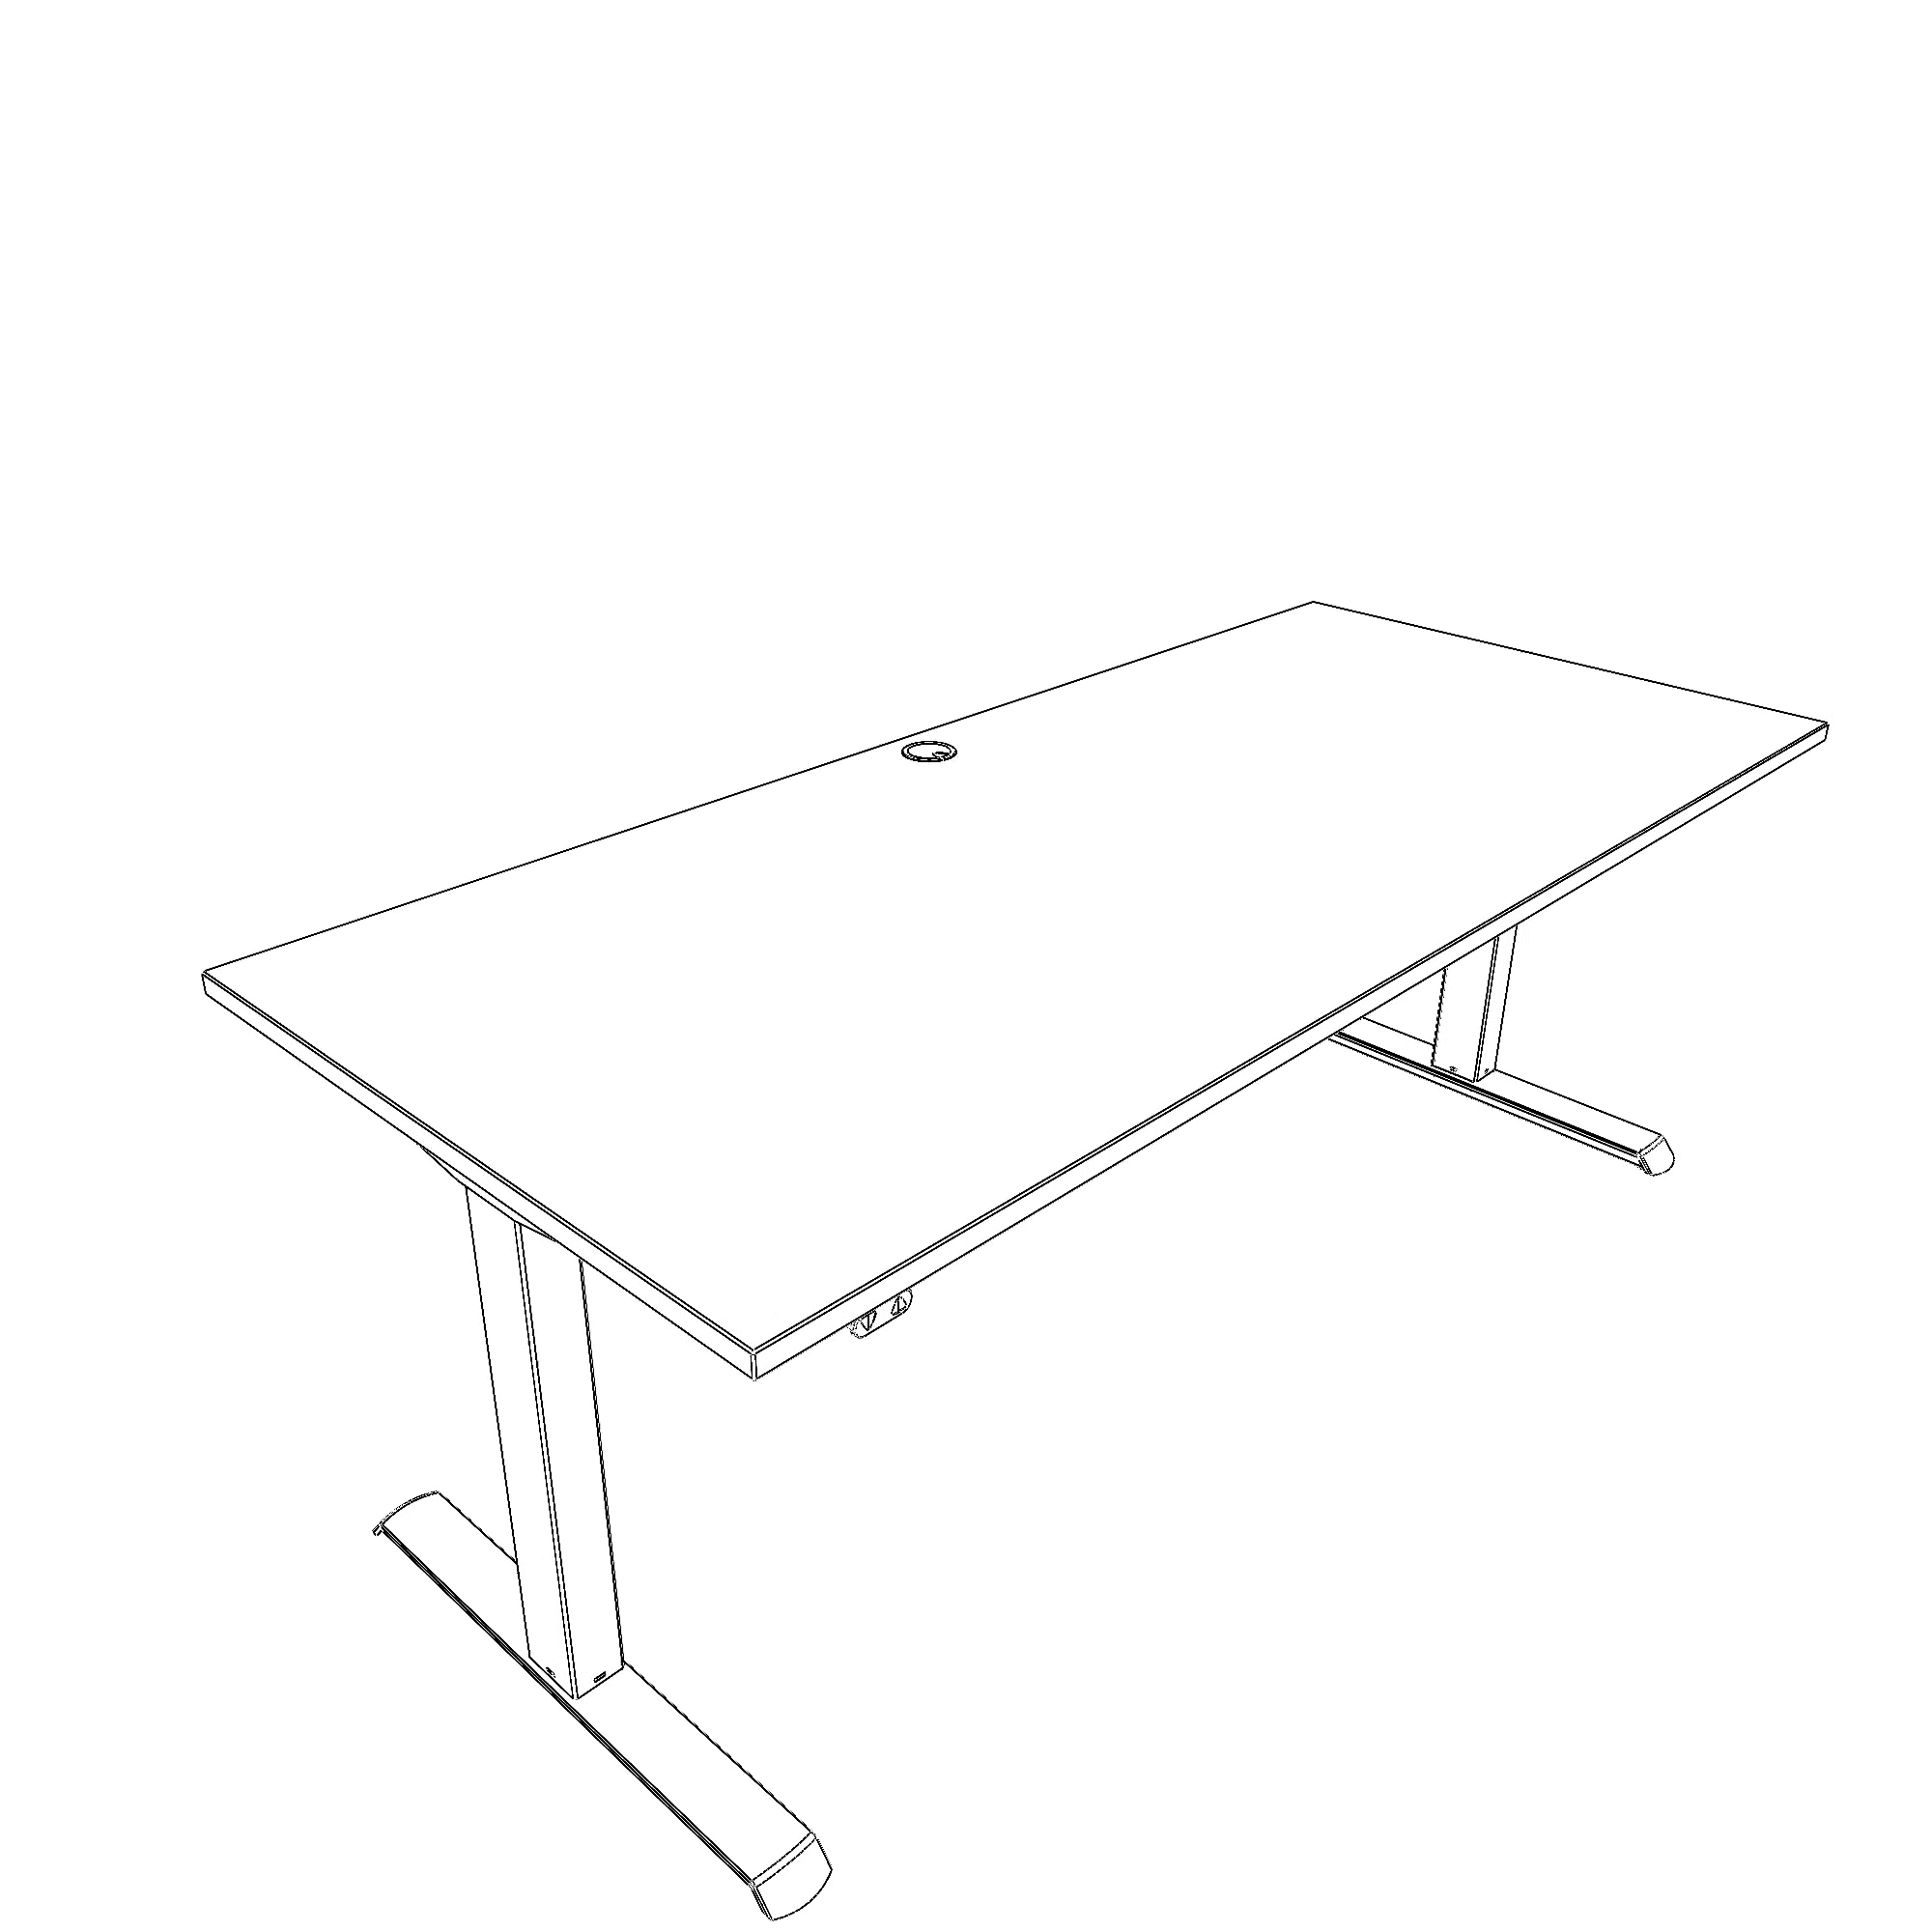 Elektrisch verstelbaar bureau | 180x80 cm | Beuken met zwart frame